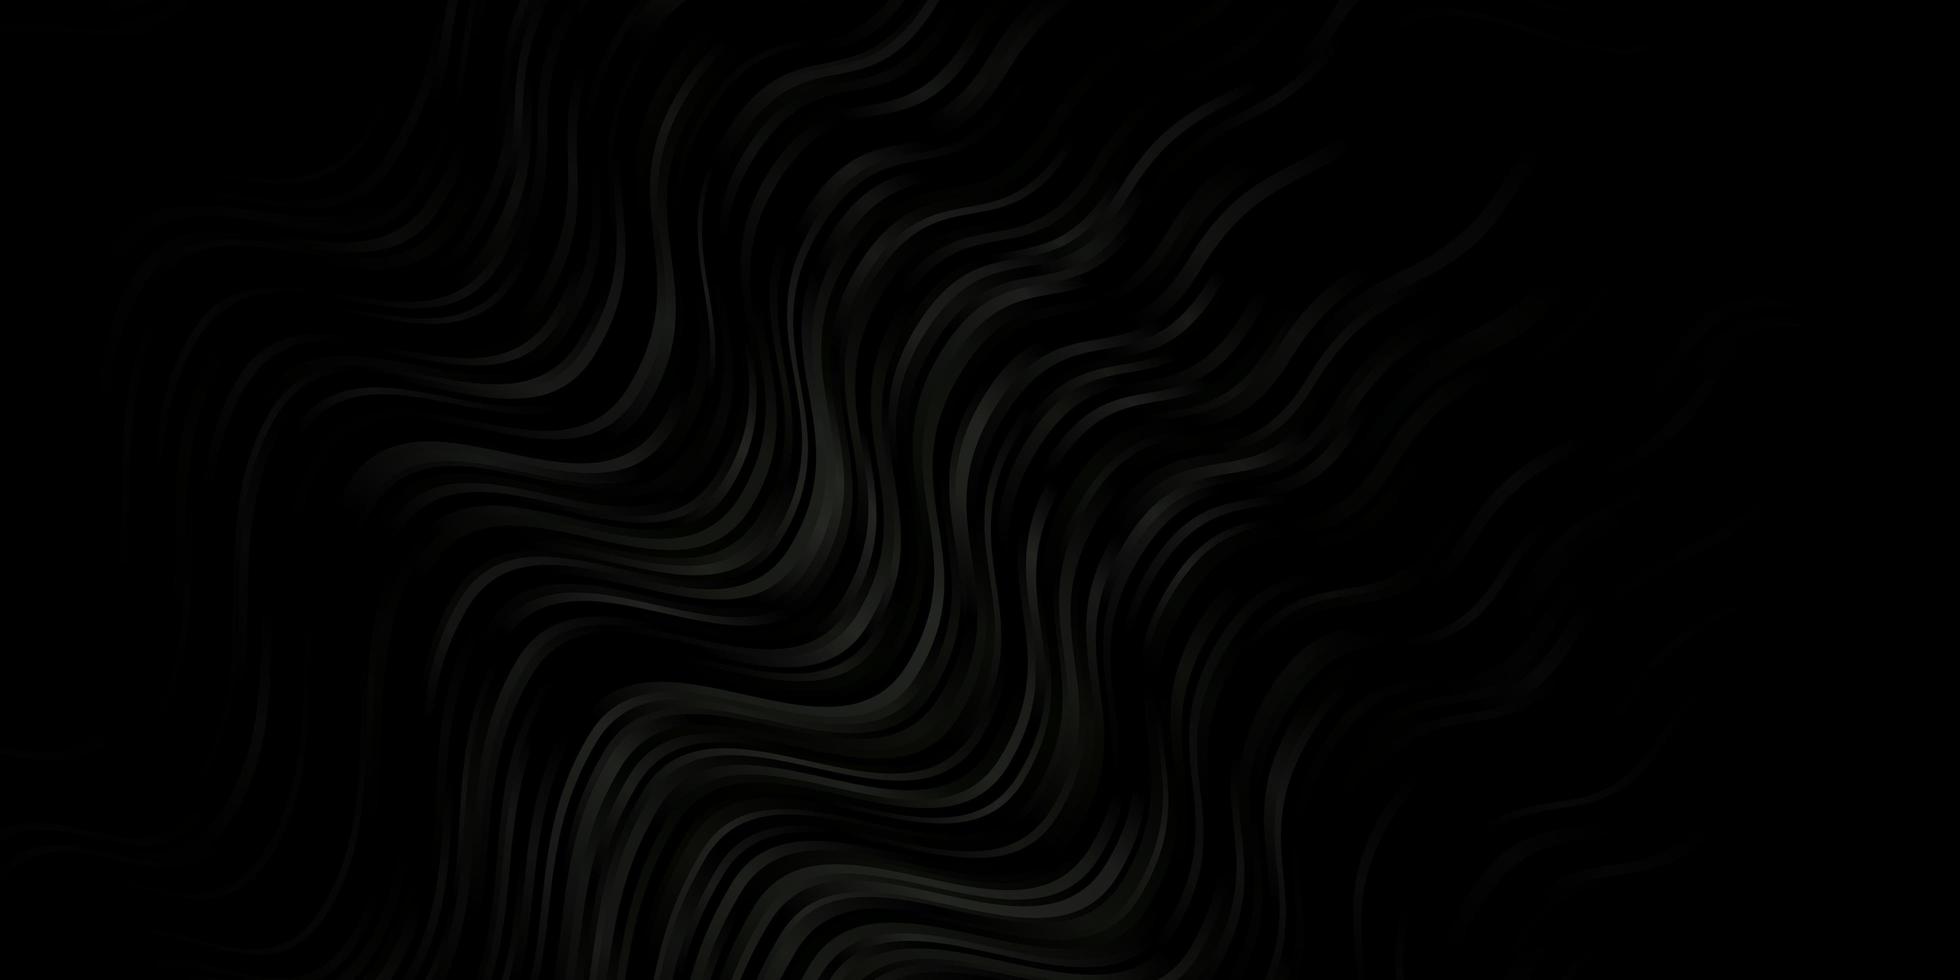 modelo de vetor cinza escuro com linhas curvas.